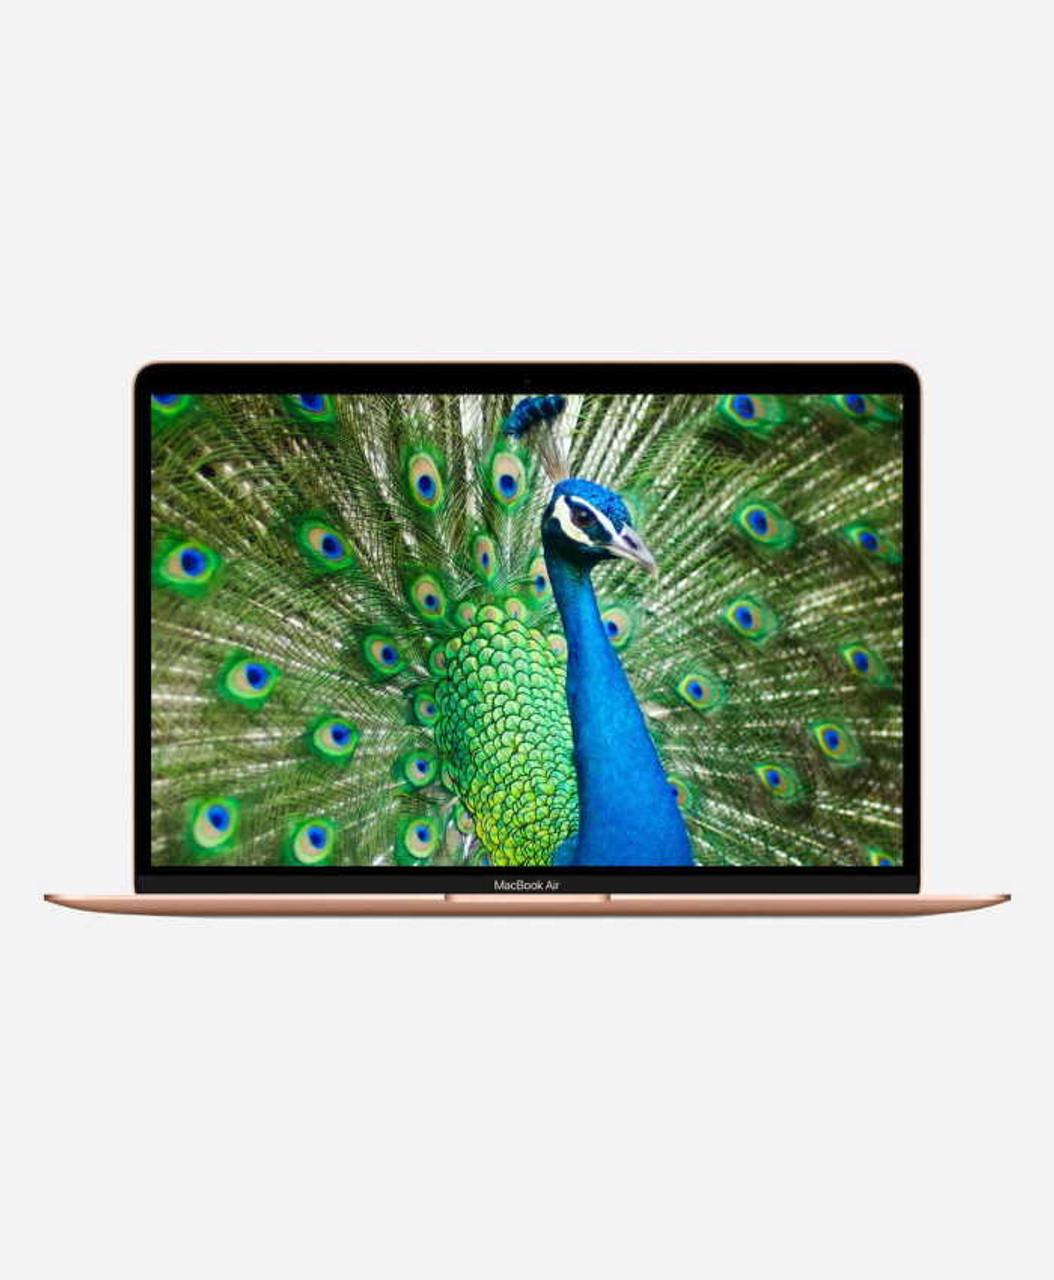 macbook air i7 gold